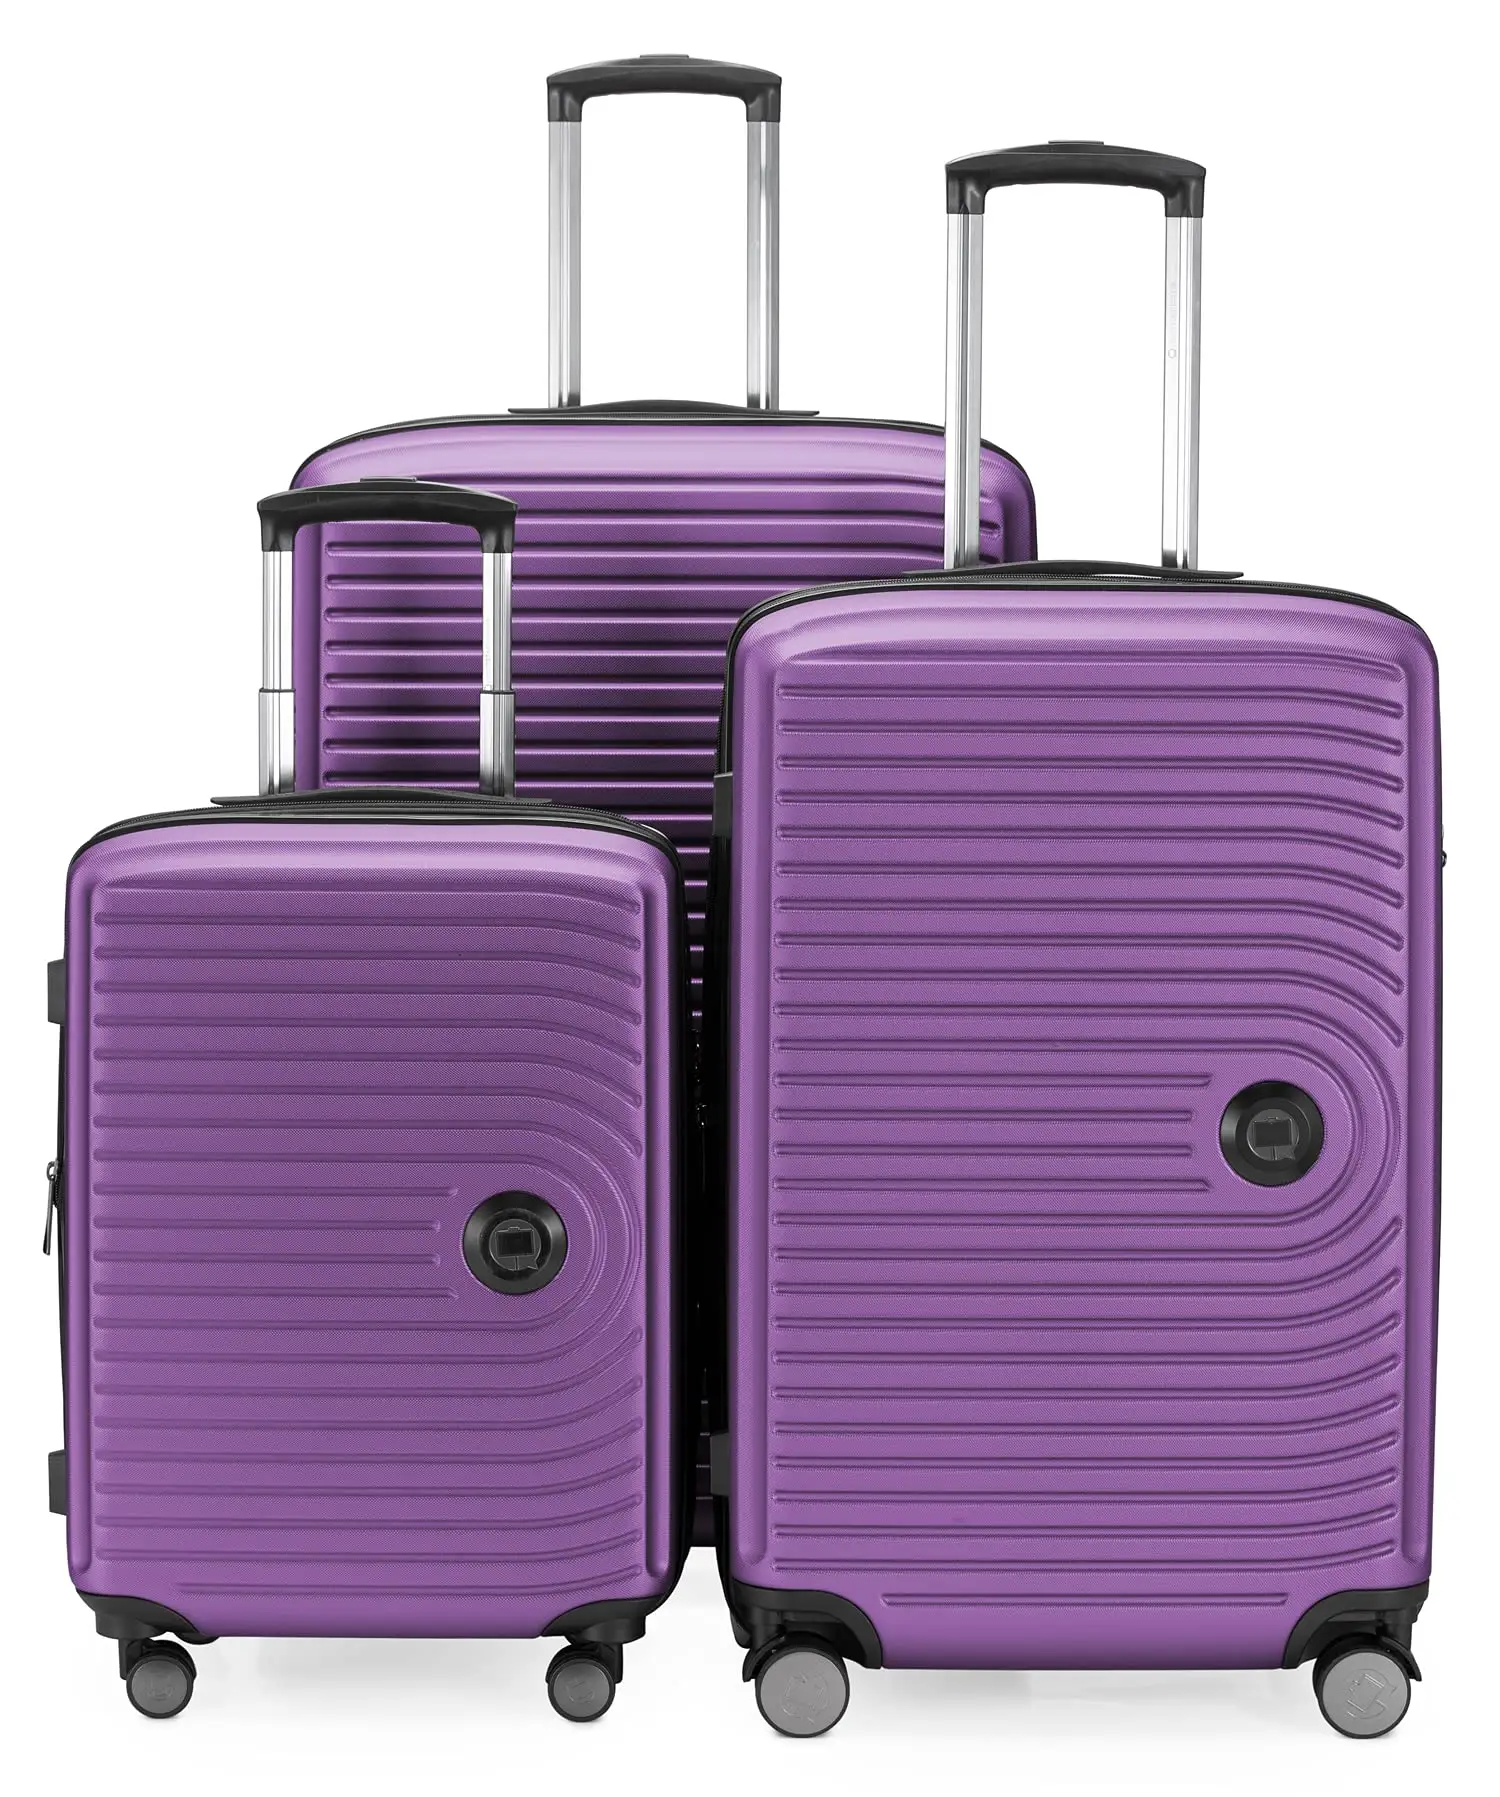 Vente en gros d'usine Ensemble de bagages de voyage personnalisé de haute qualité Sacs à roulettes de voyage ABS Ensembles de bagages de voyage valise